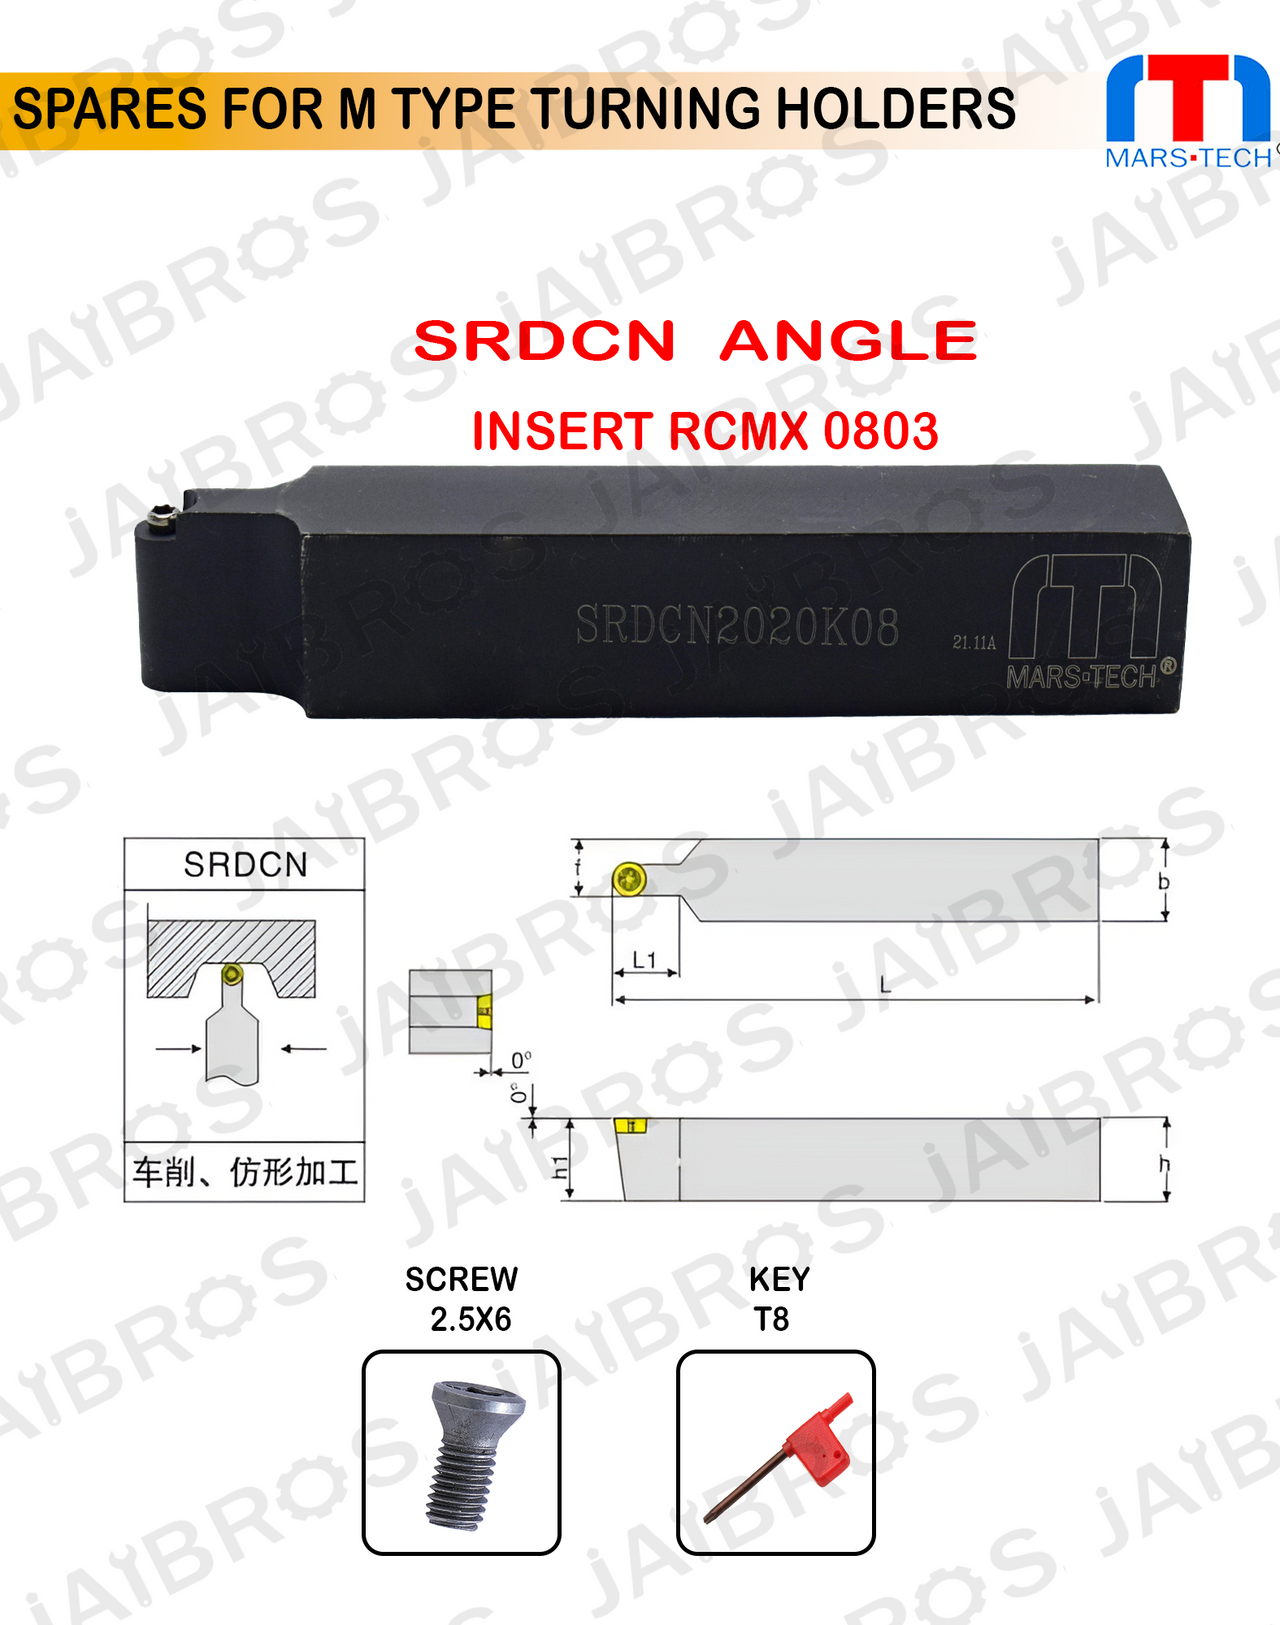 SRDCN 2020 RC0803 insert holder for turining radius pack of 1